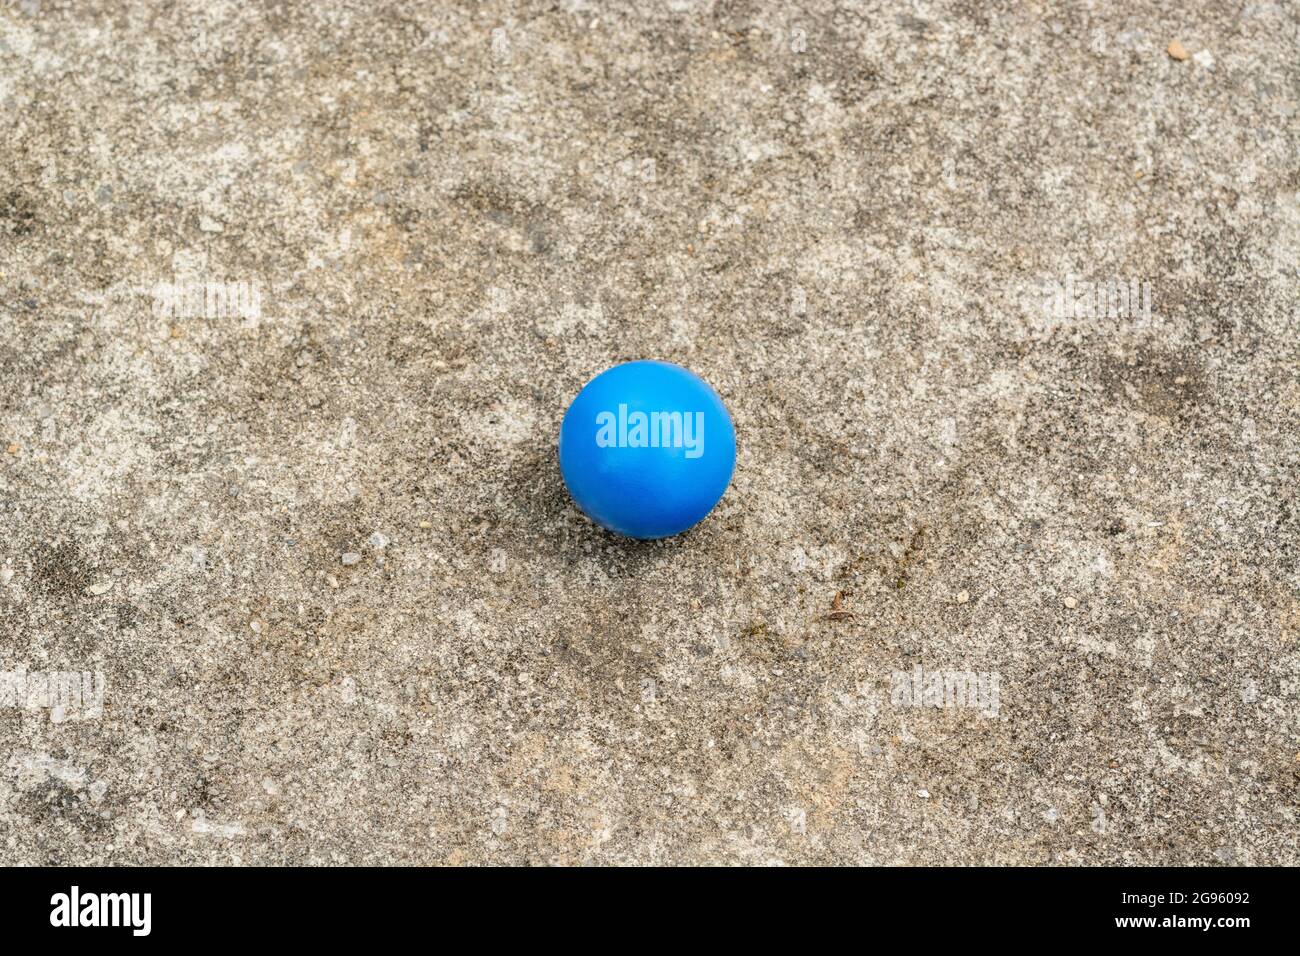 Sphère en plastique bleu sur la surface de ciment abîmé + espace de copie. Pour « tout seul », isolement, singulier, boule bleue, balle dans votre cour, solitude abstraite Banque D'Images